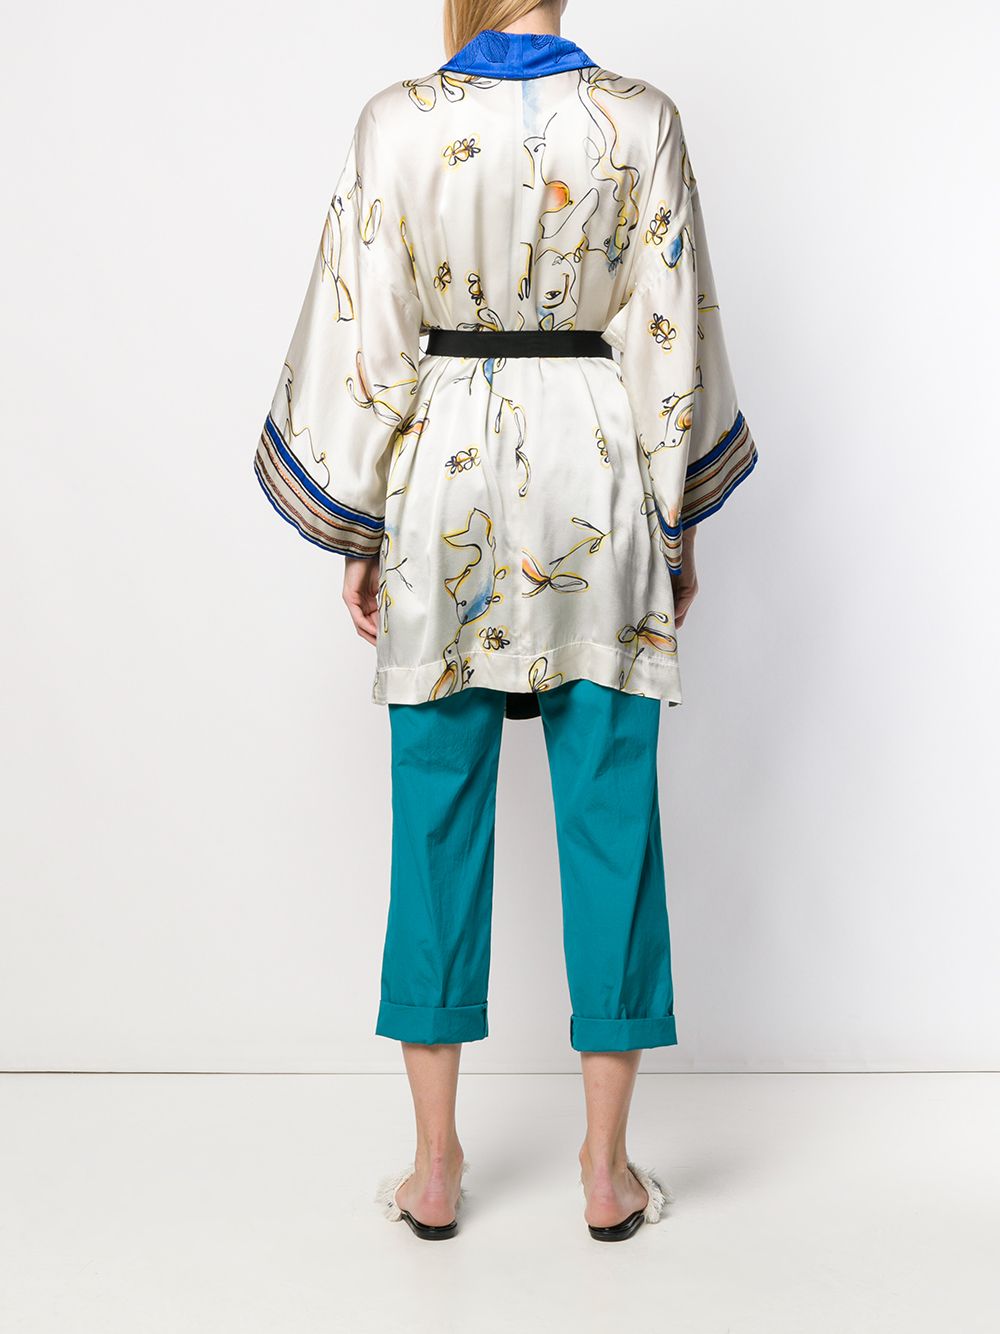 фото Forte Forte жакет в стилистике кимоно с цветочным принтом